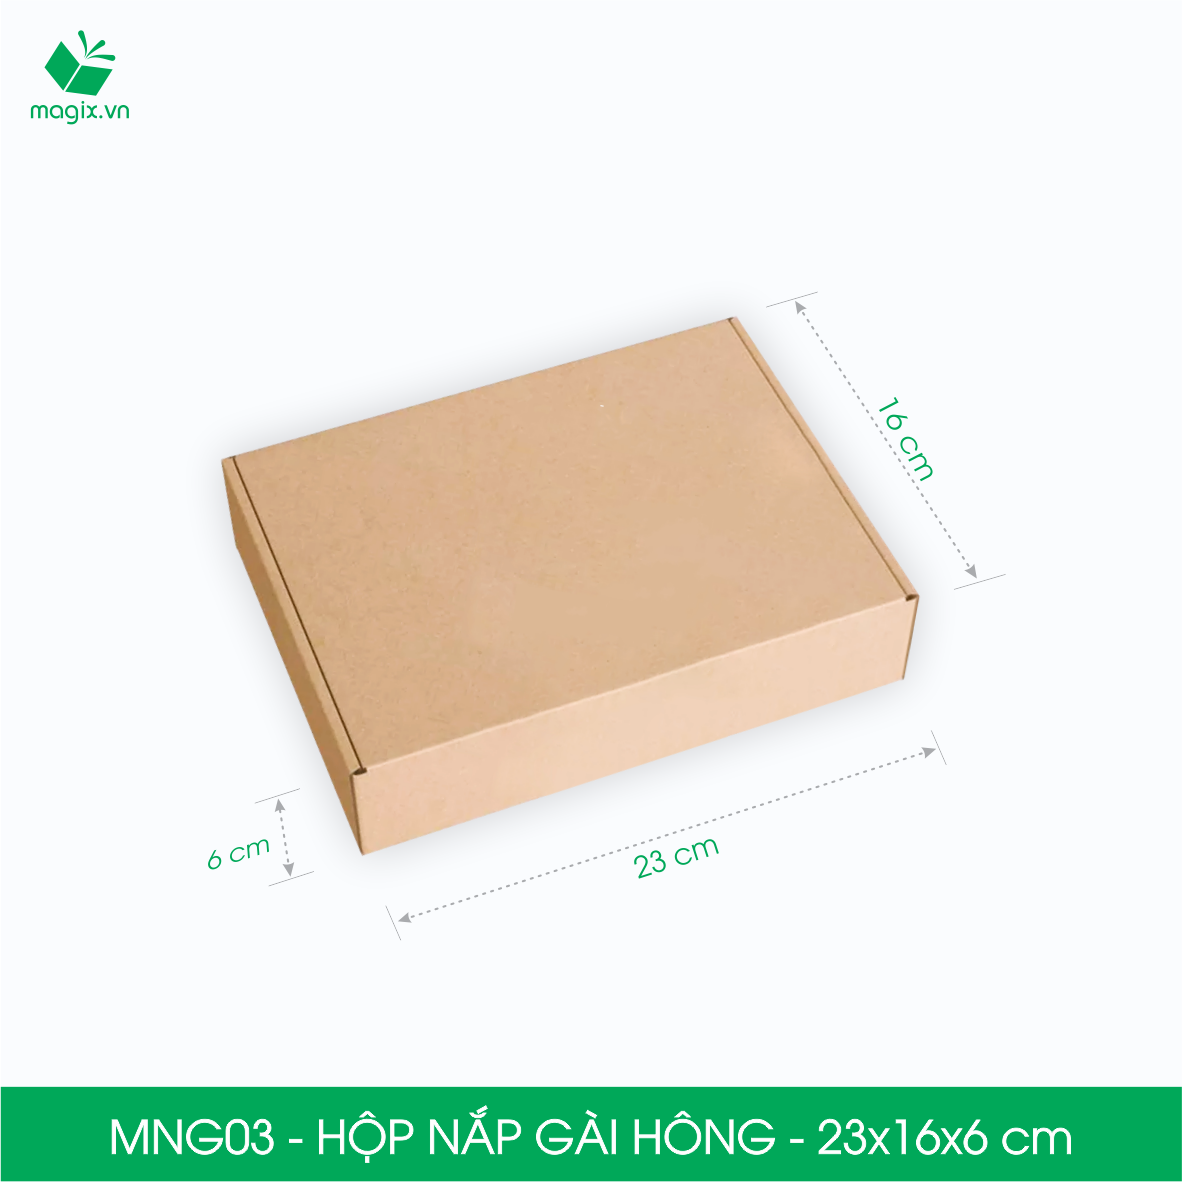 MNG03 - 23x16x6cm - Combo 60 hộp nắp gài hông - Thùng carton đóng hàng